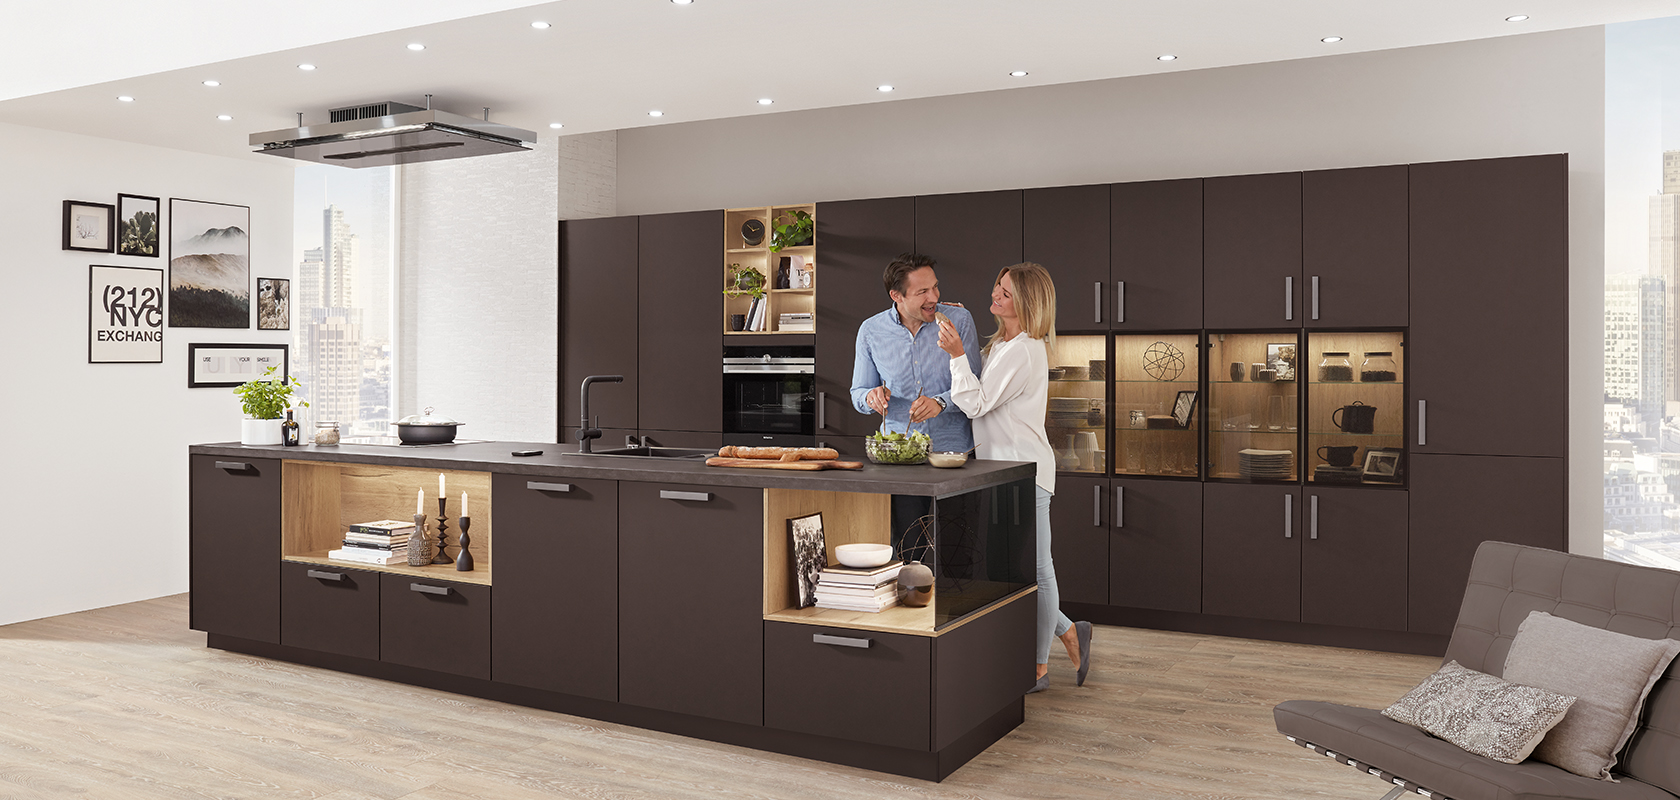 Una cocina moderna con una pareja cocinando juntos, con elegantes gabinetes oscuros, electrodomésticos integrados y una isla espaciosa con un diseño de concepto abierto.